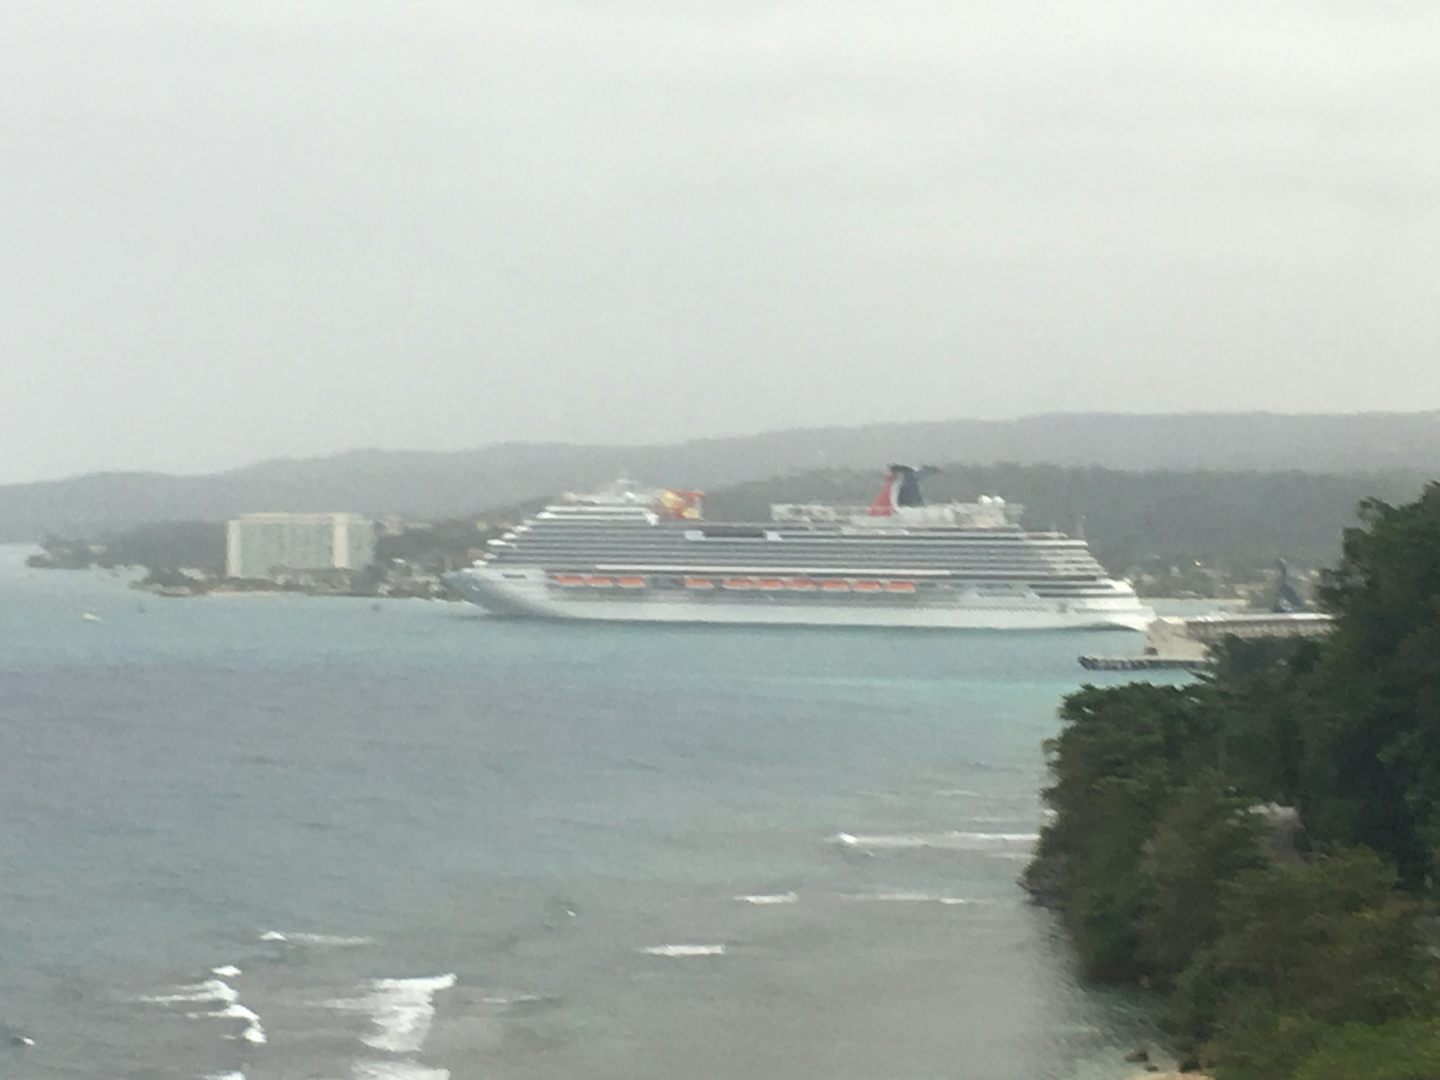 Carnival Vista docked in Jamaica